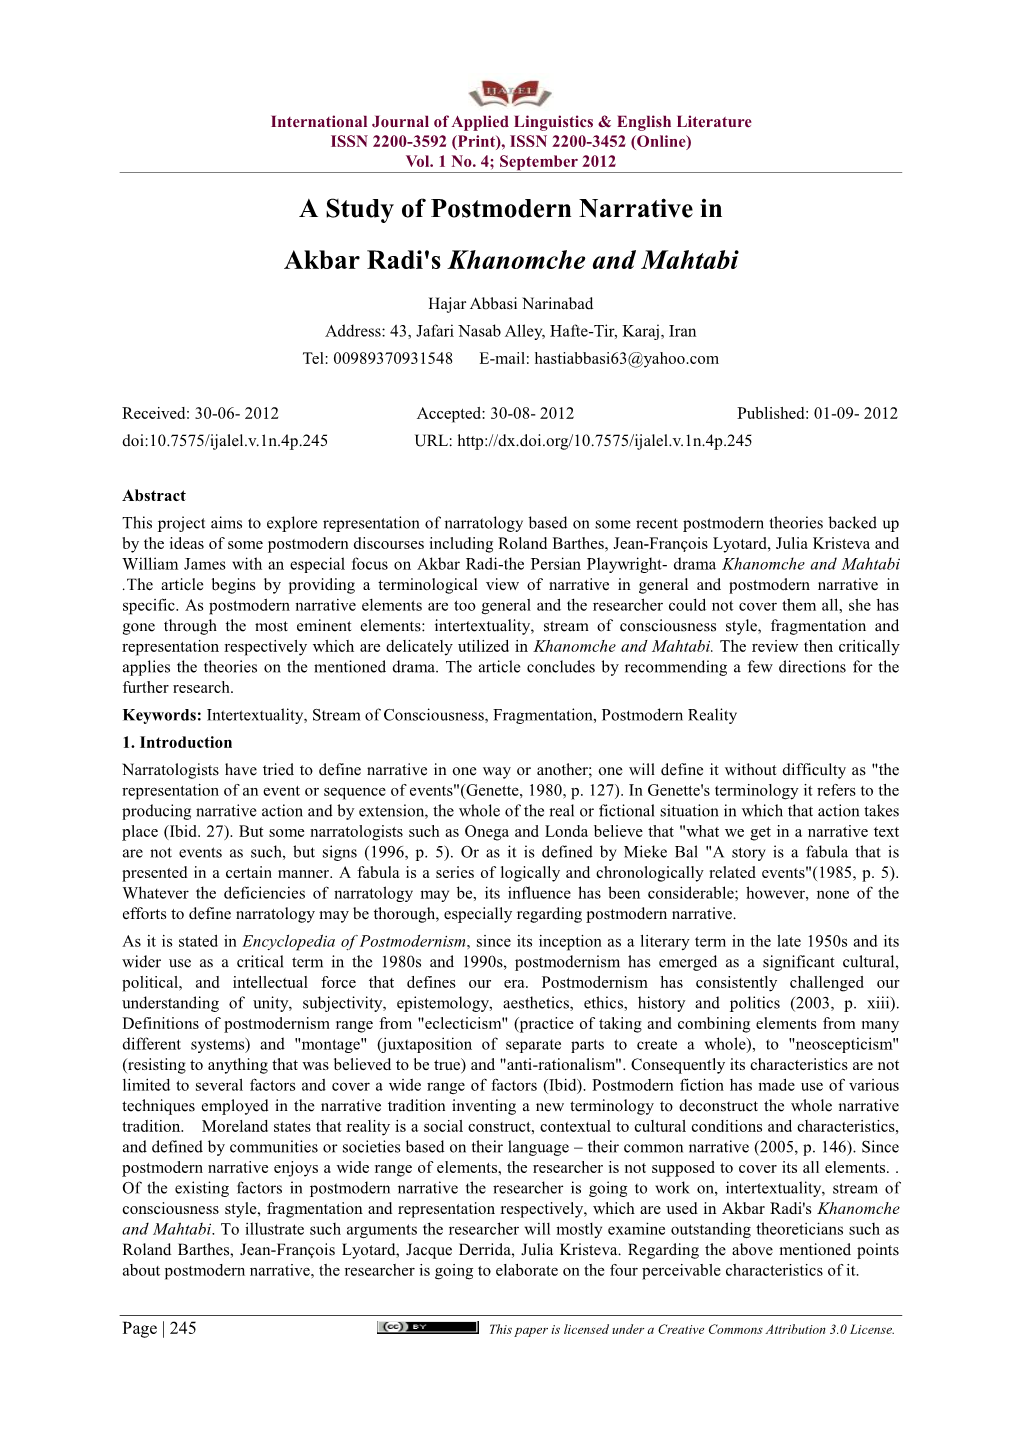 A Study of Postmodern Narrative in Akbar Radi's Khanomche and Mahtabi